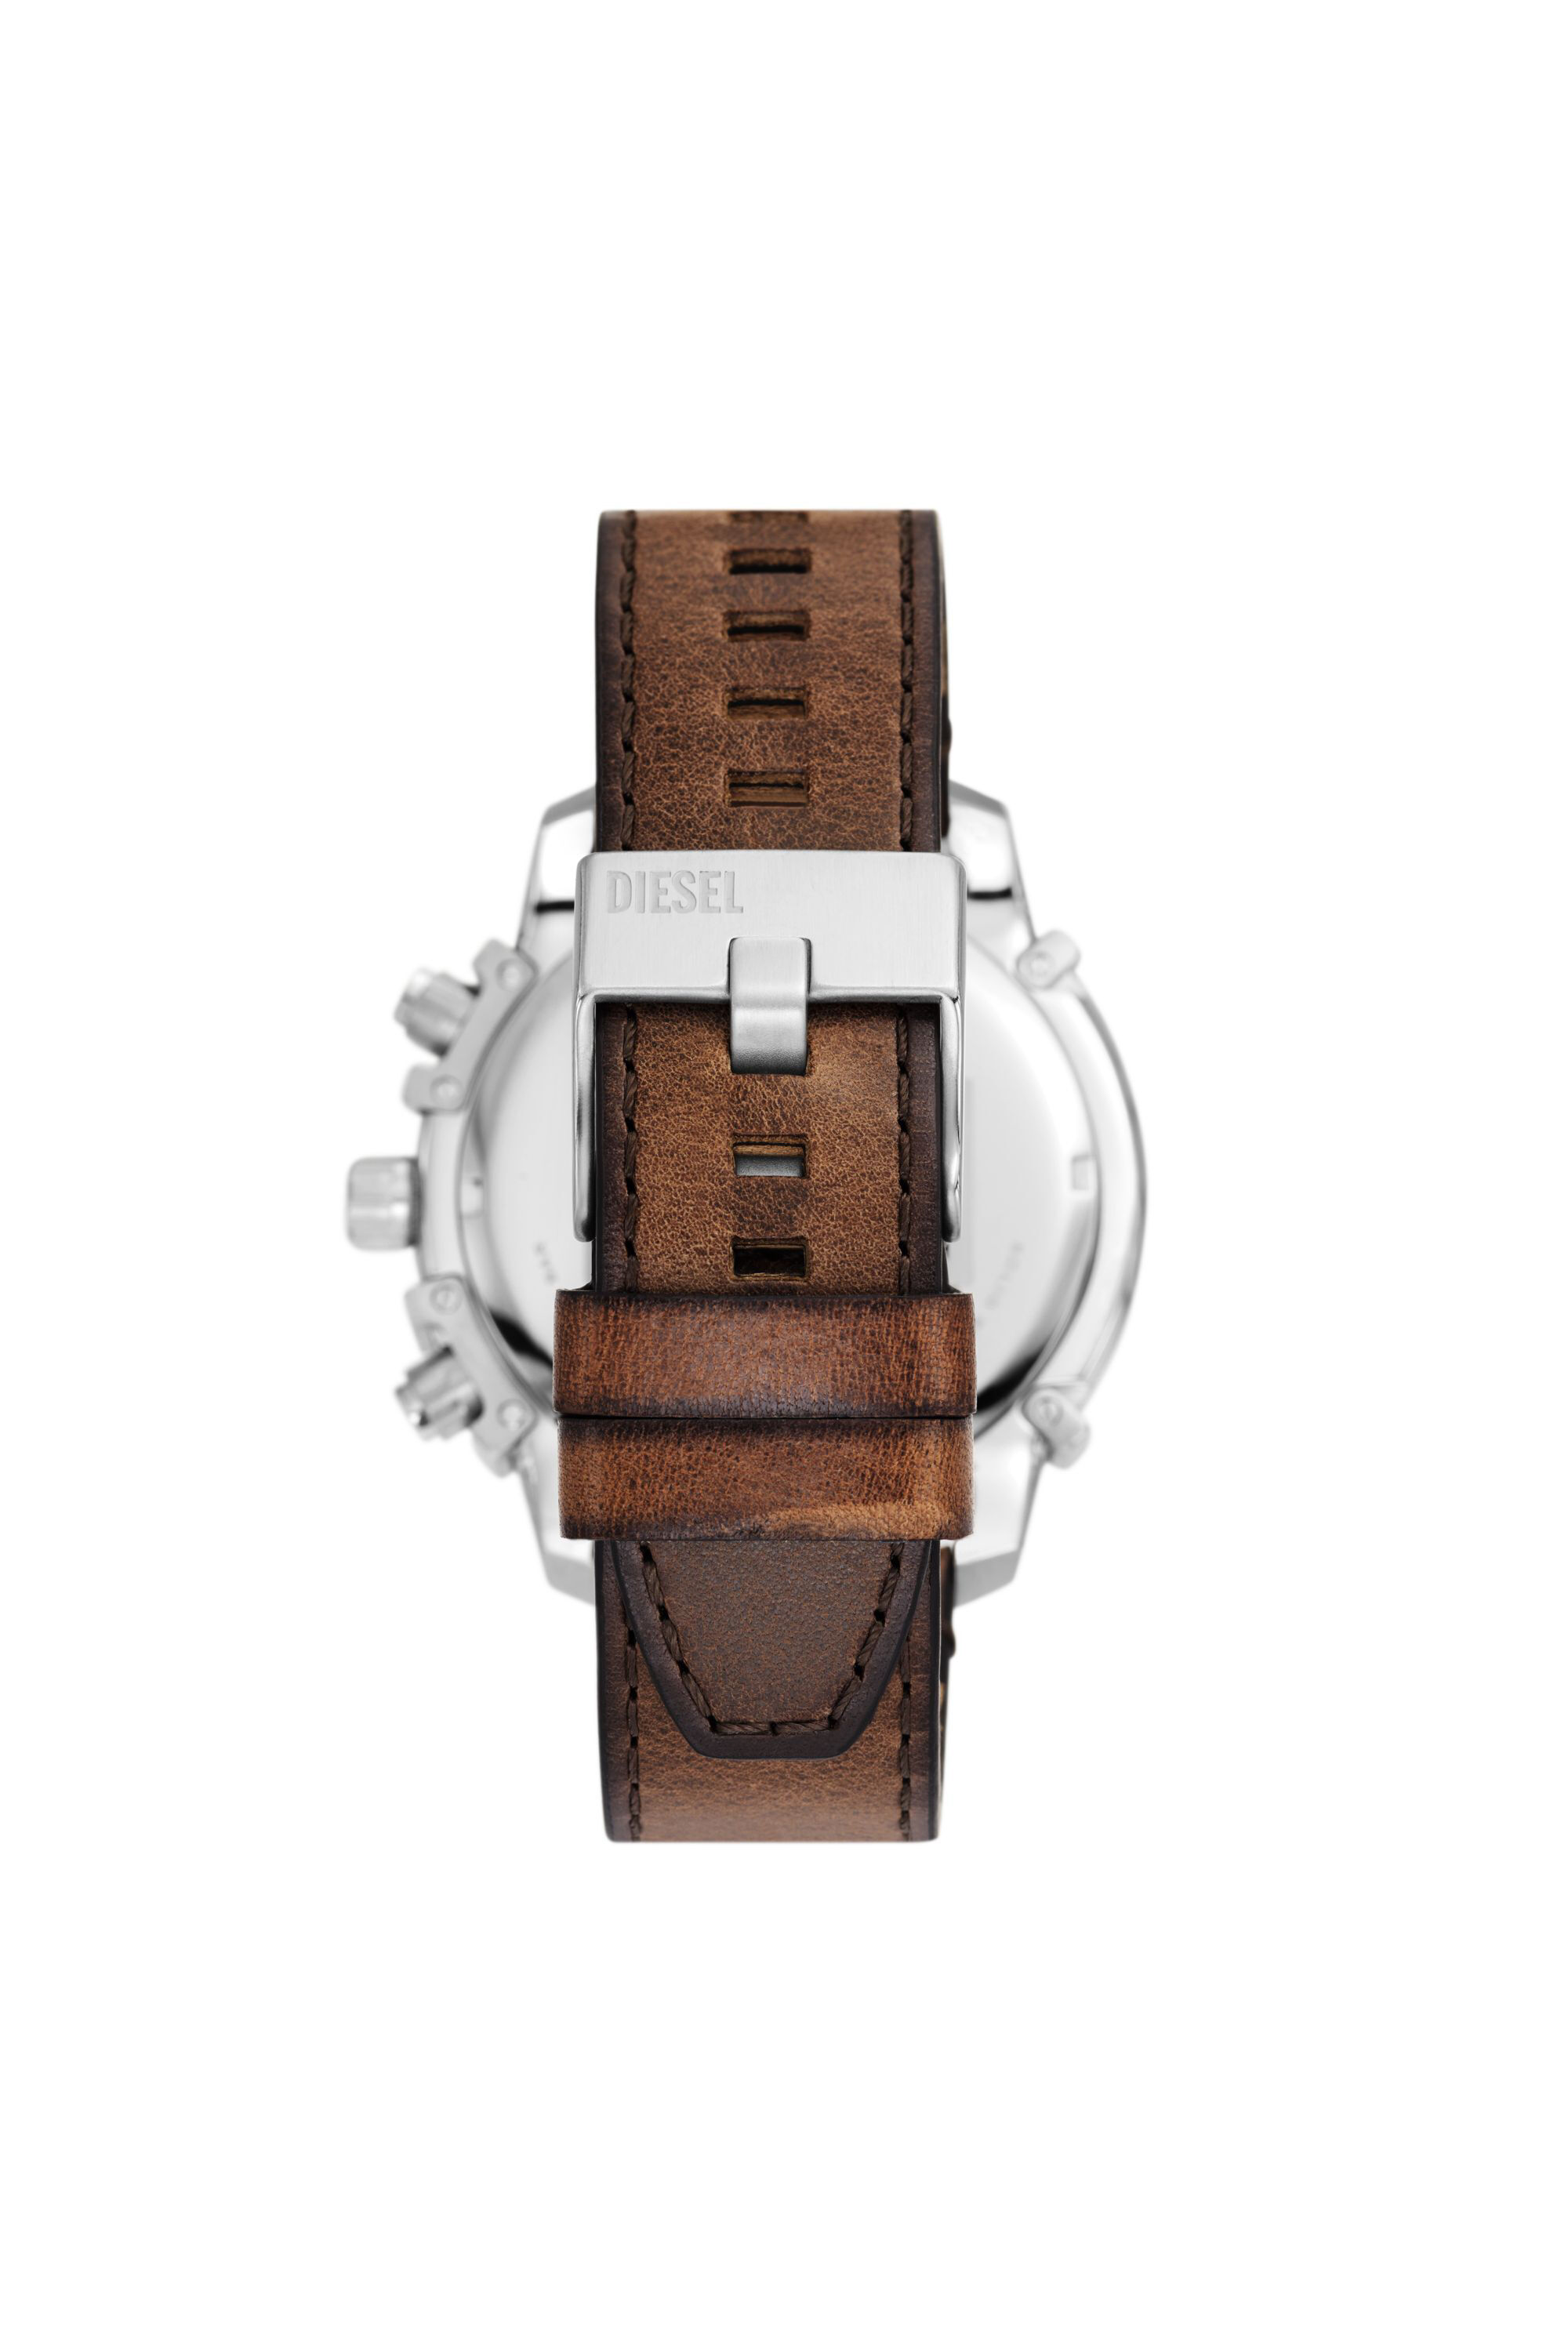 Diesel - DZ4656, Hombre Reloj Griffed de cuero marrón con cronógrafo in Marrón - Image 2